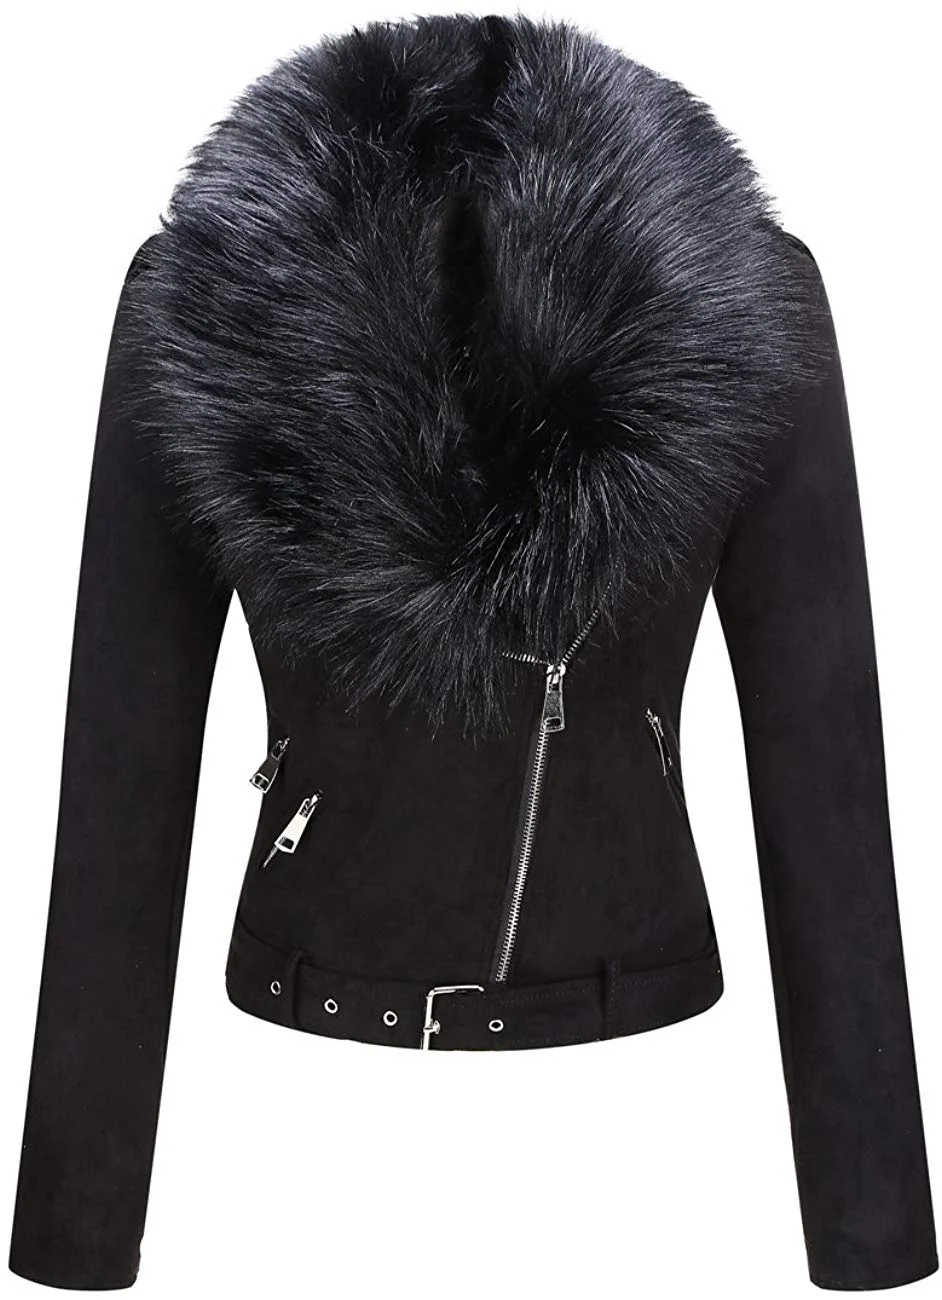 Women's Faux Suede Short Jacket, Moto Jacket with Detachable Faux Fur Collar